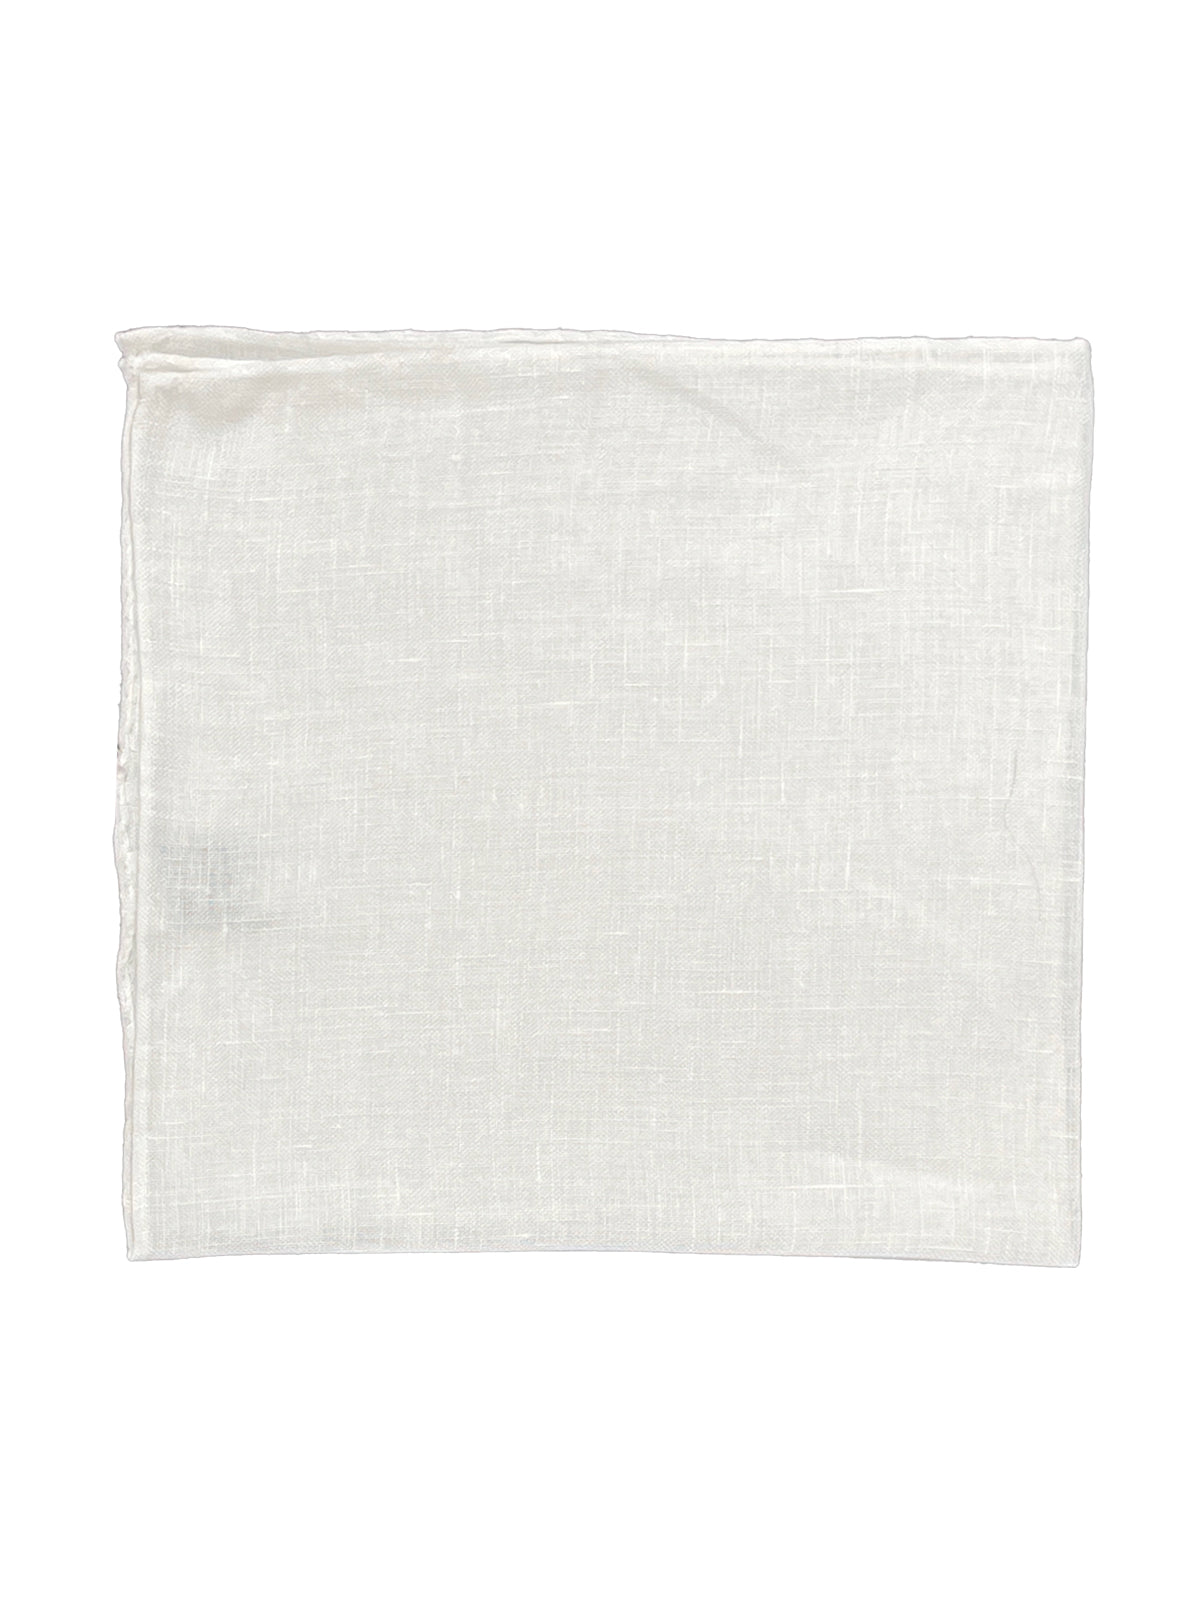 White Linen Pochette